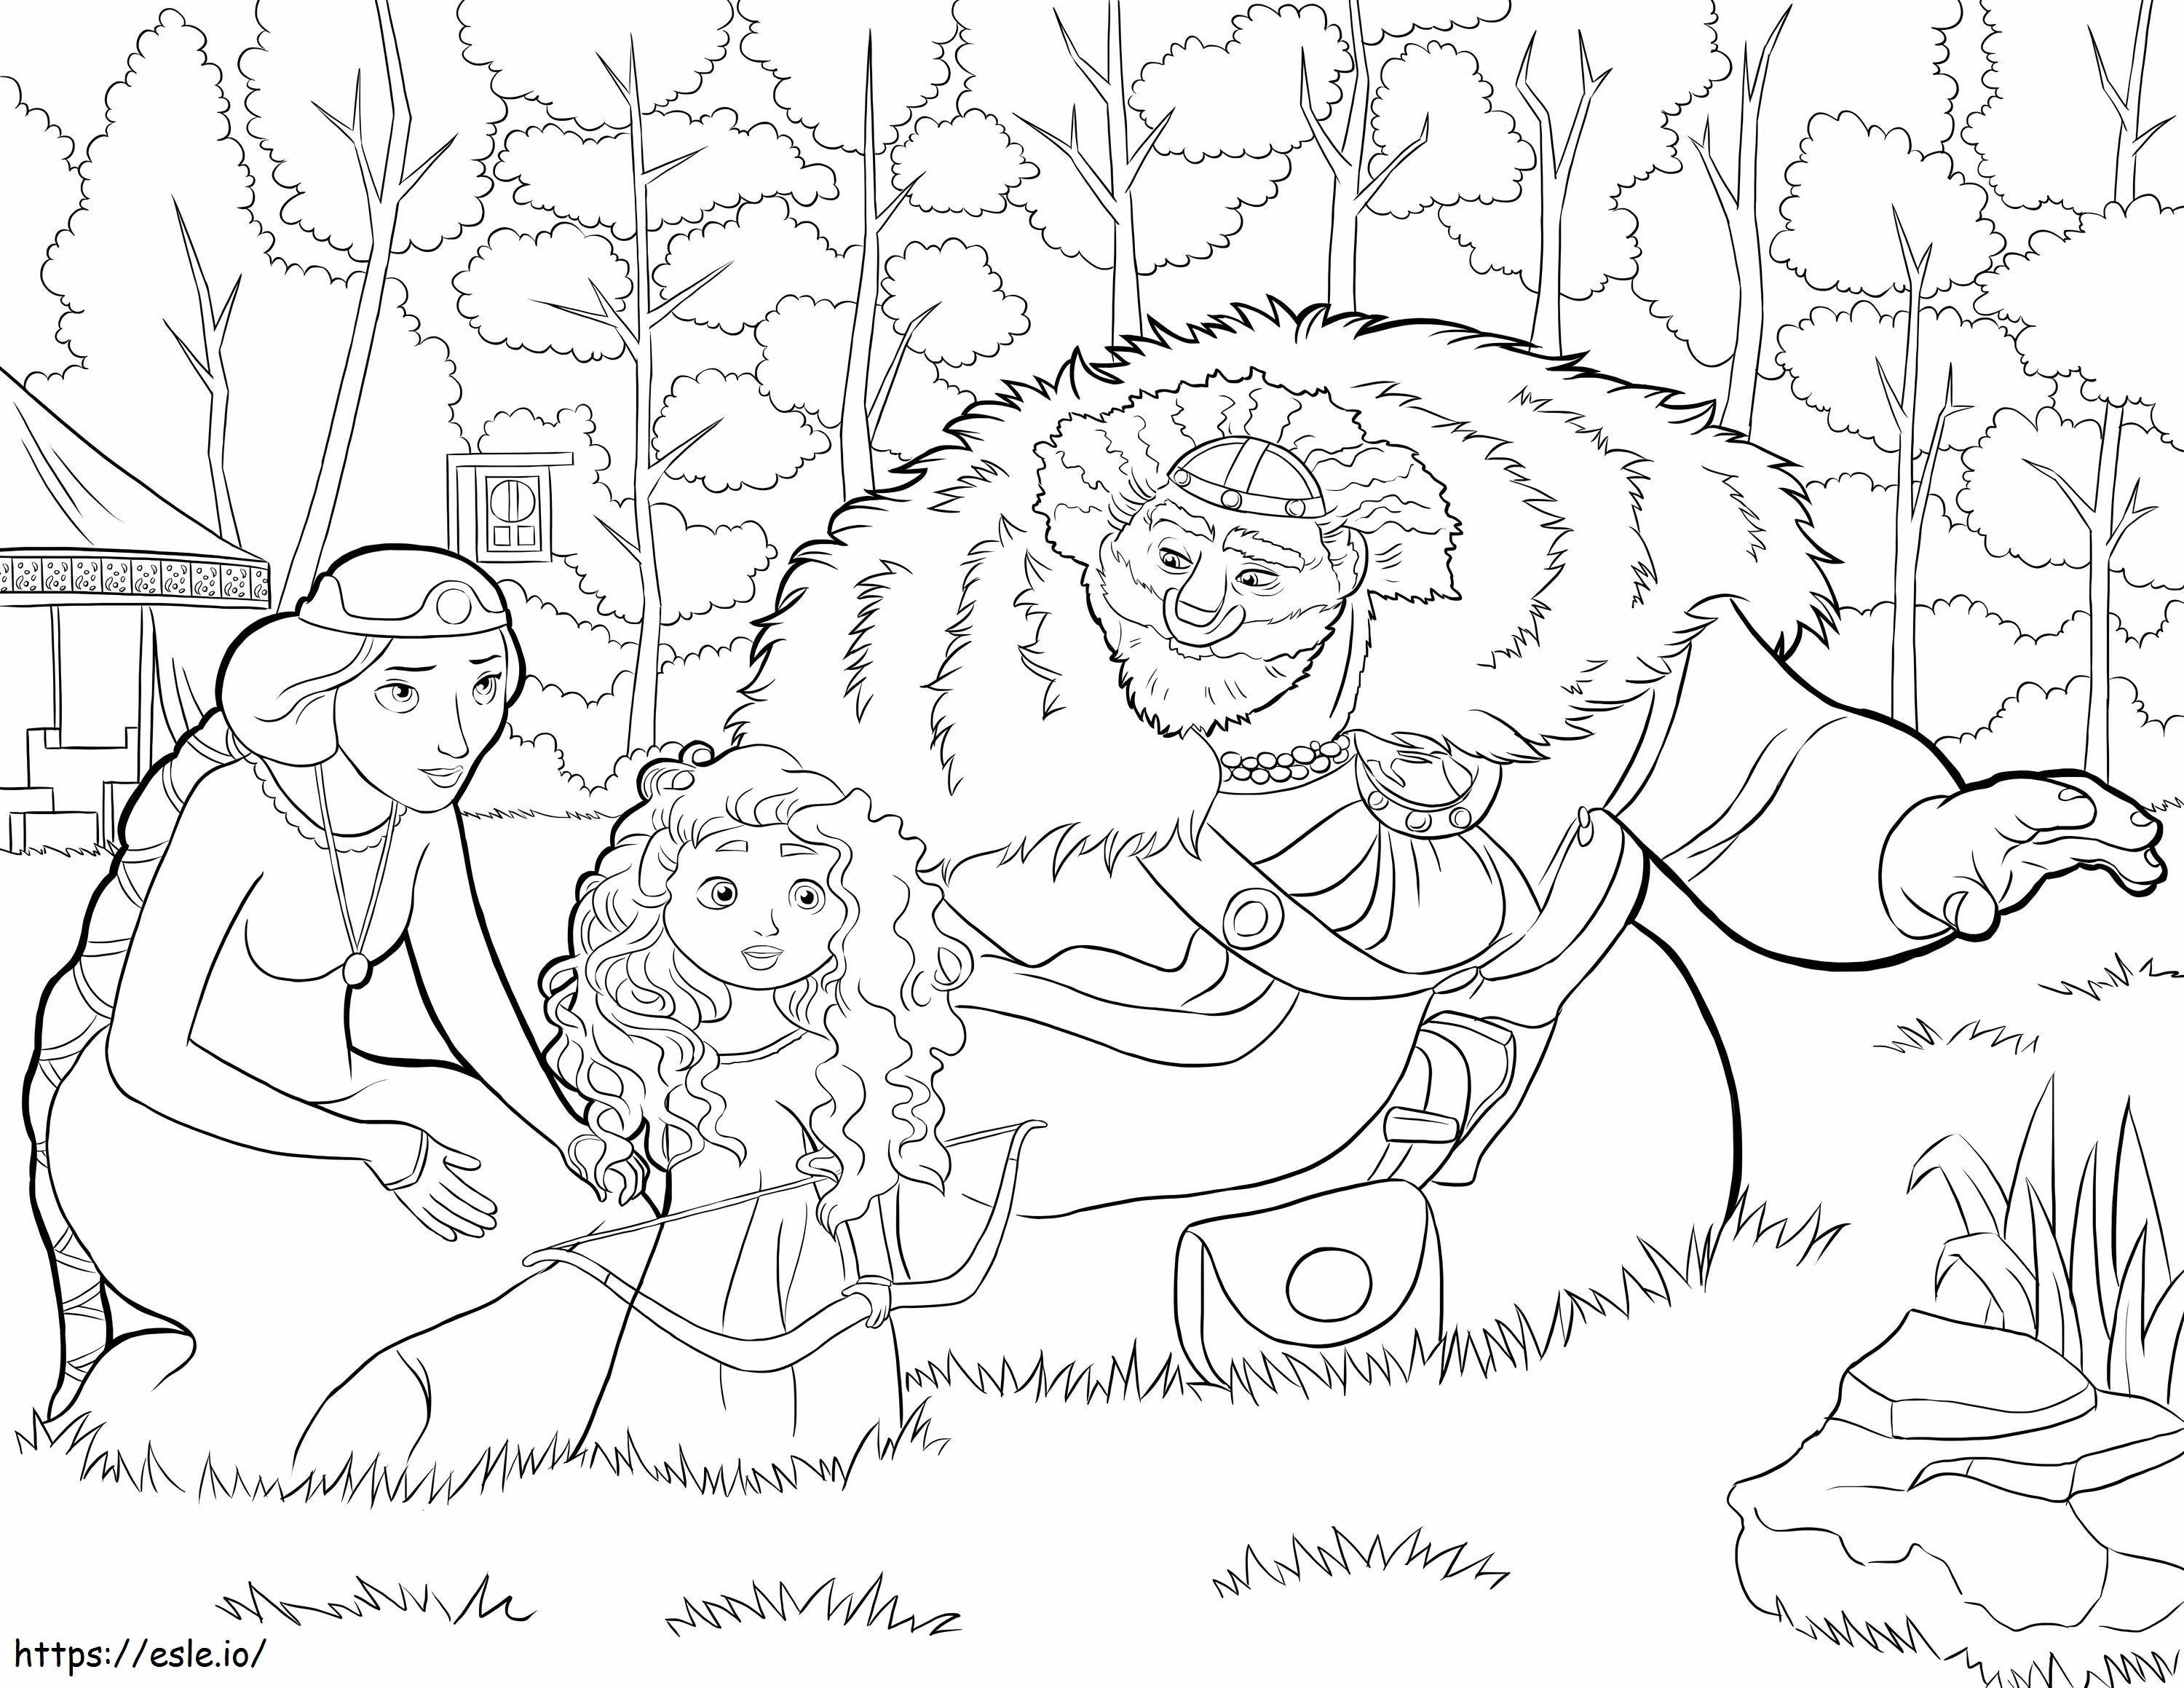 Regele Fergus și familia la scară de colorat